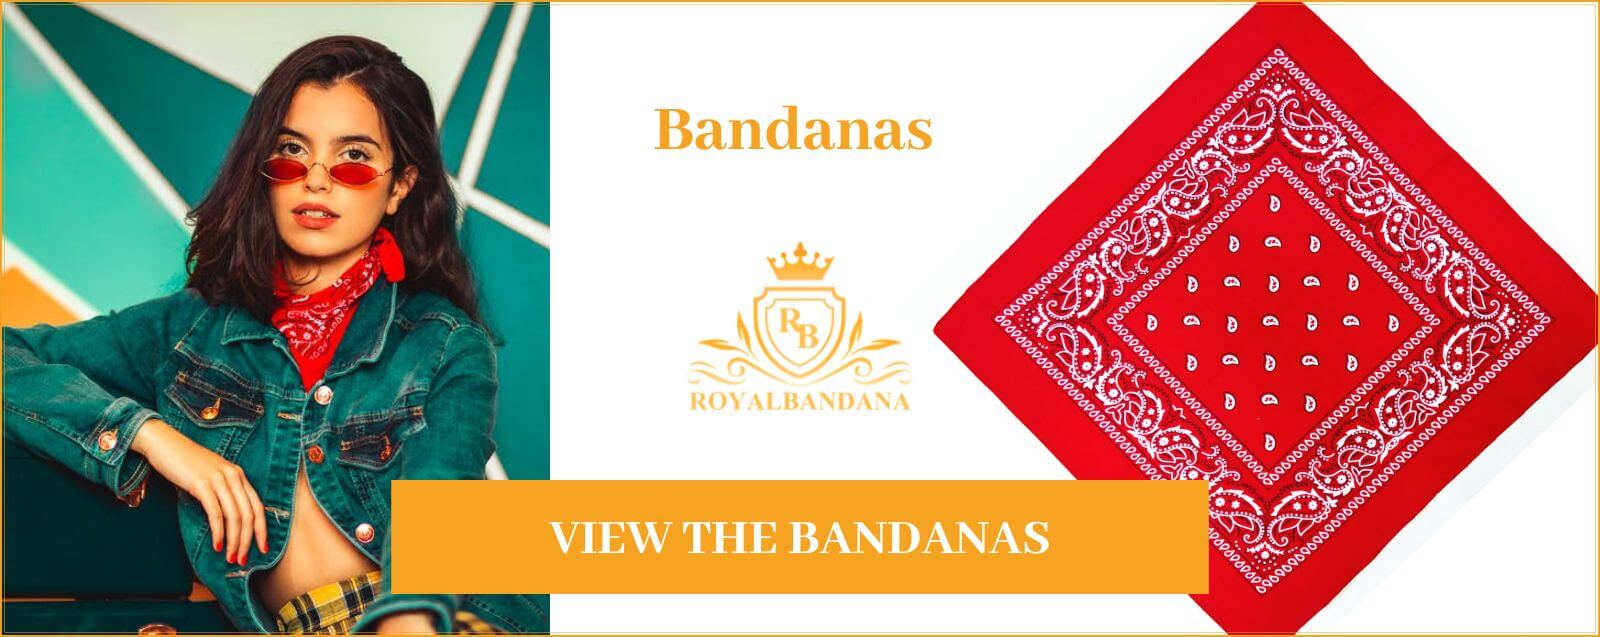 royalbandana-shop-buy-bandana